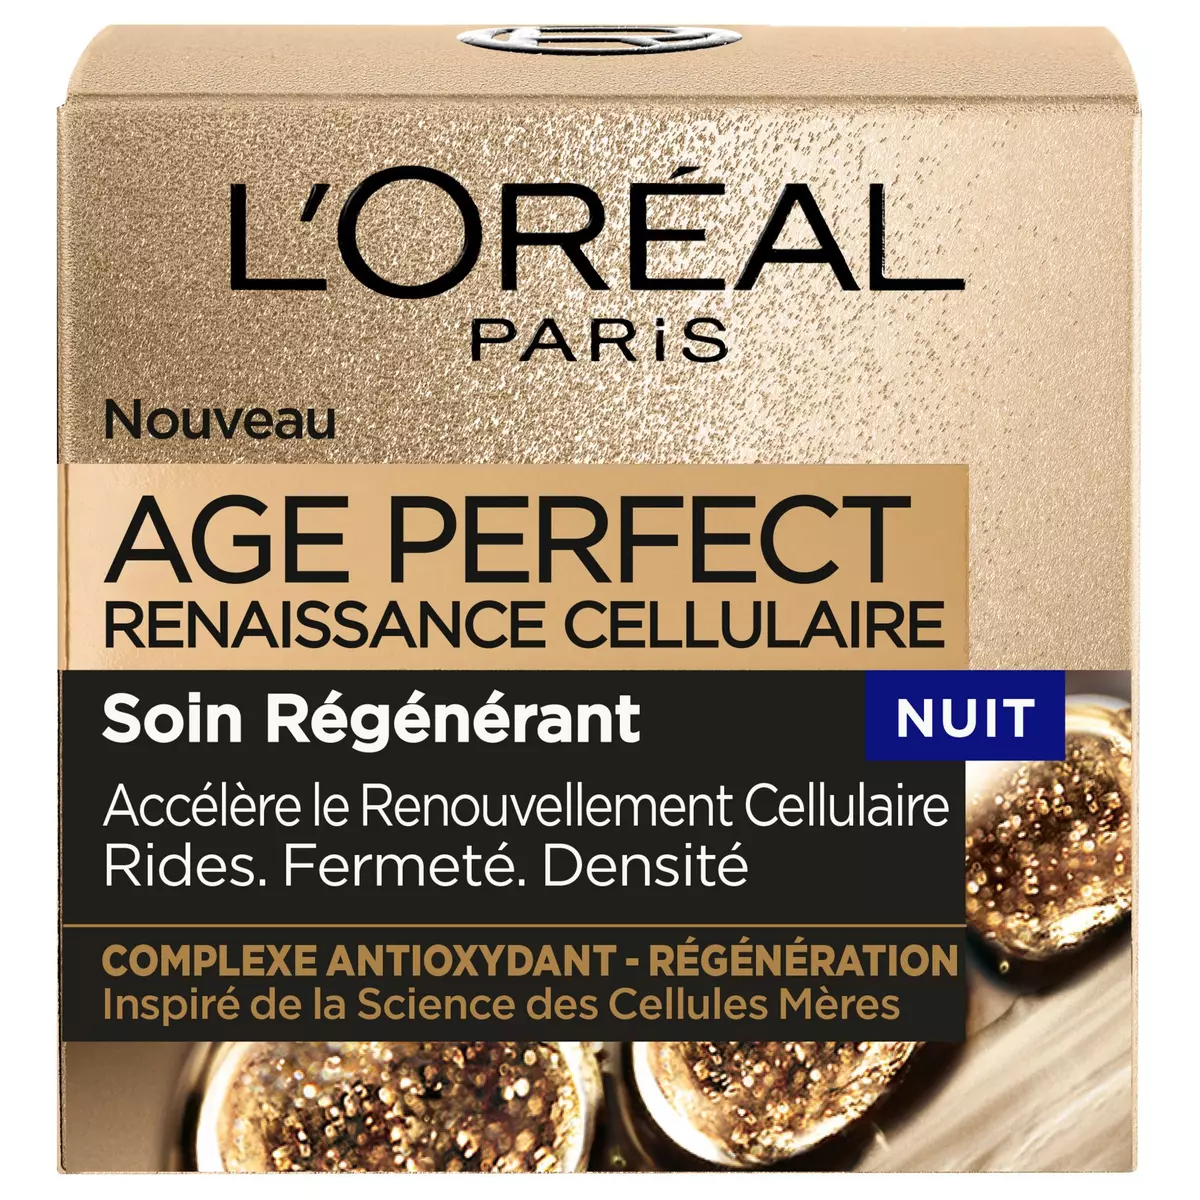 L'OREAL Age Perfect crème de nuit renaissance cellulaire 50ml